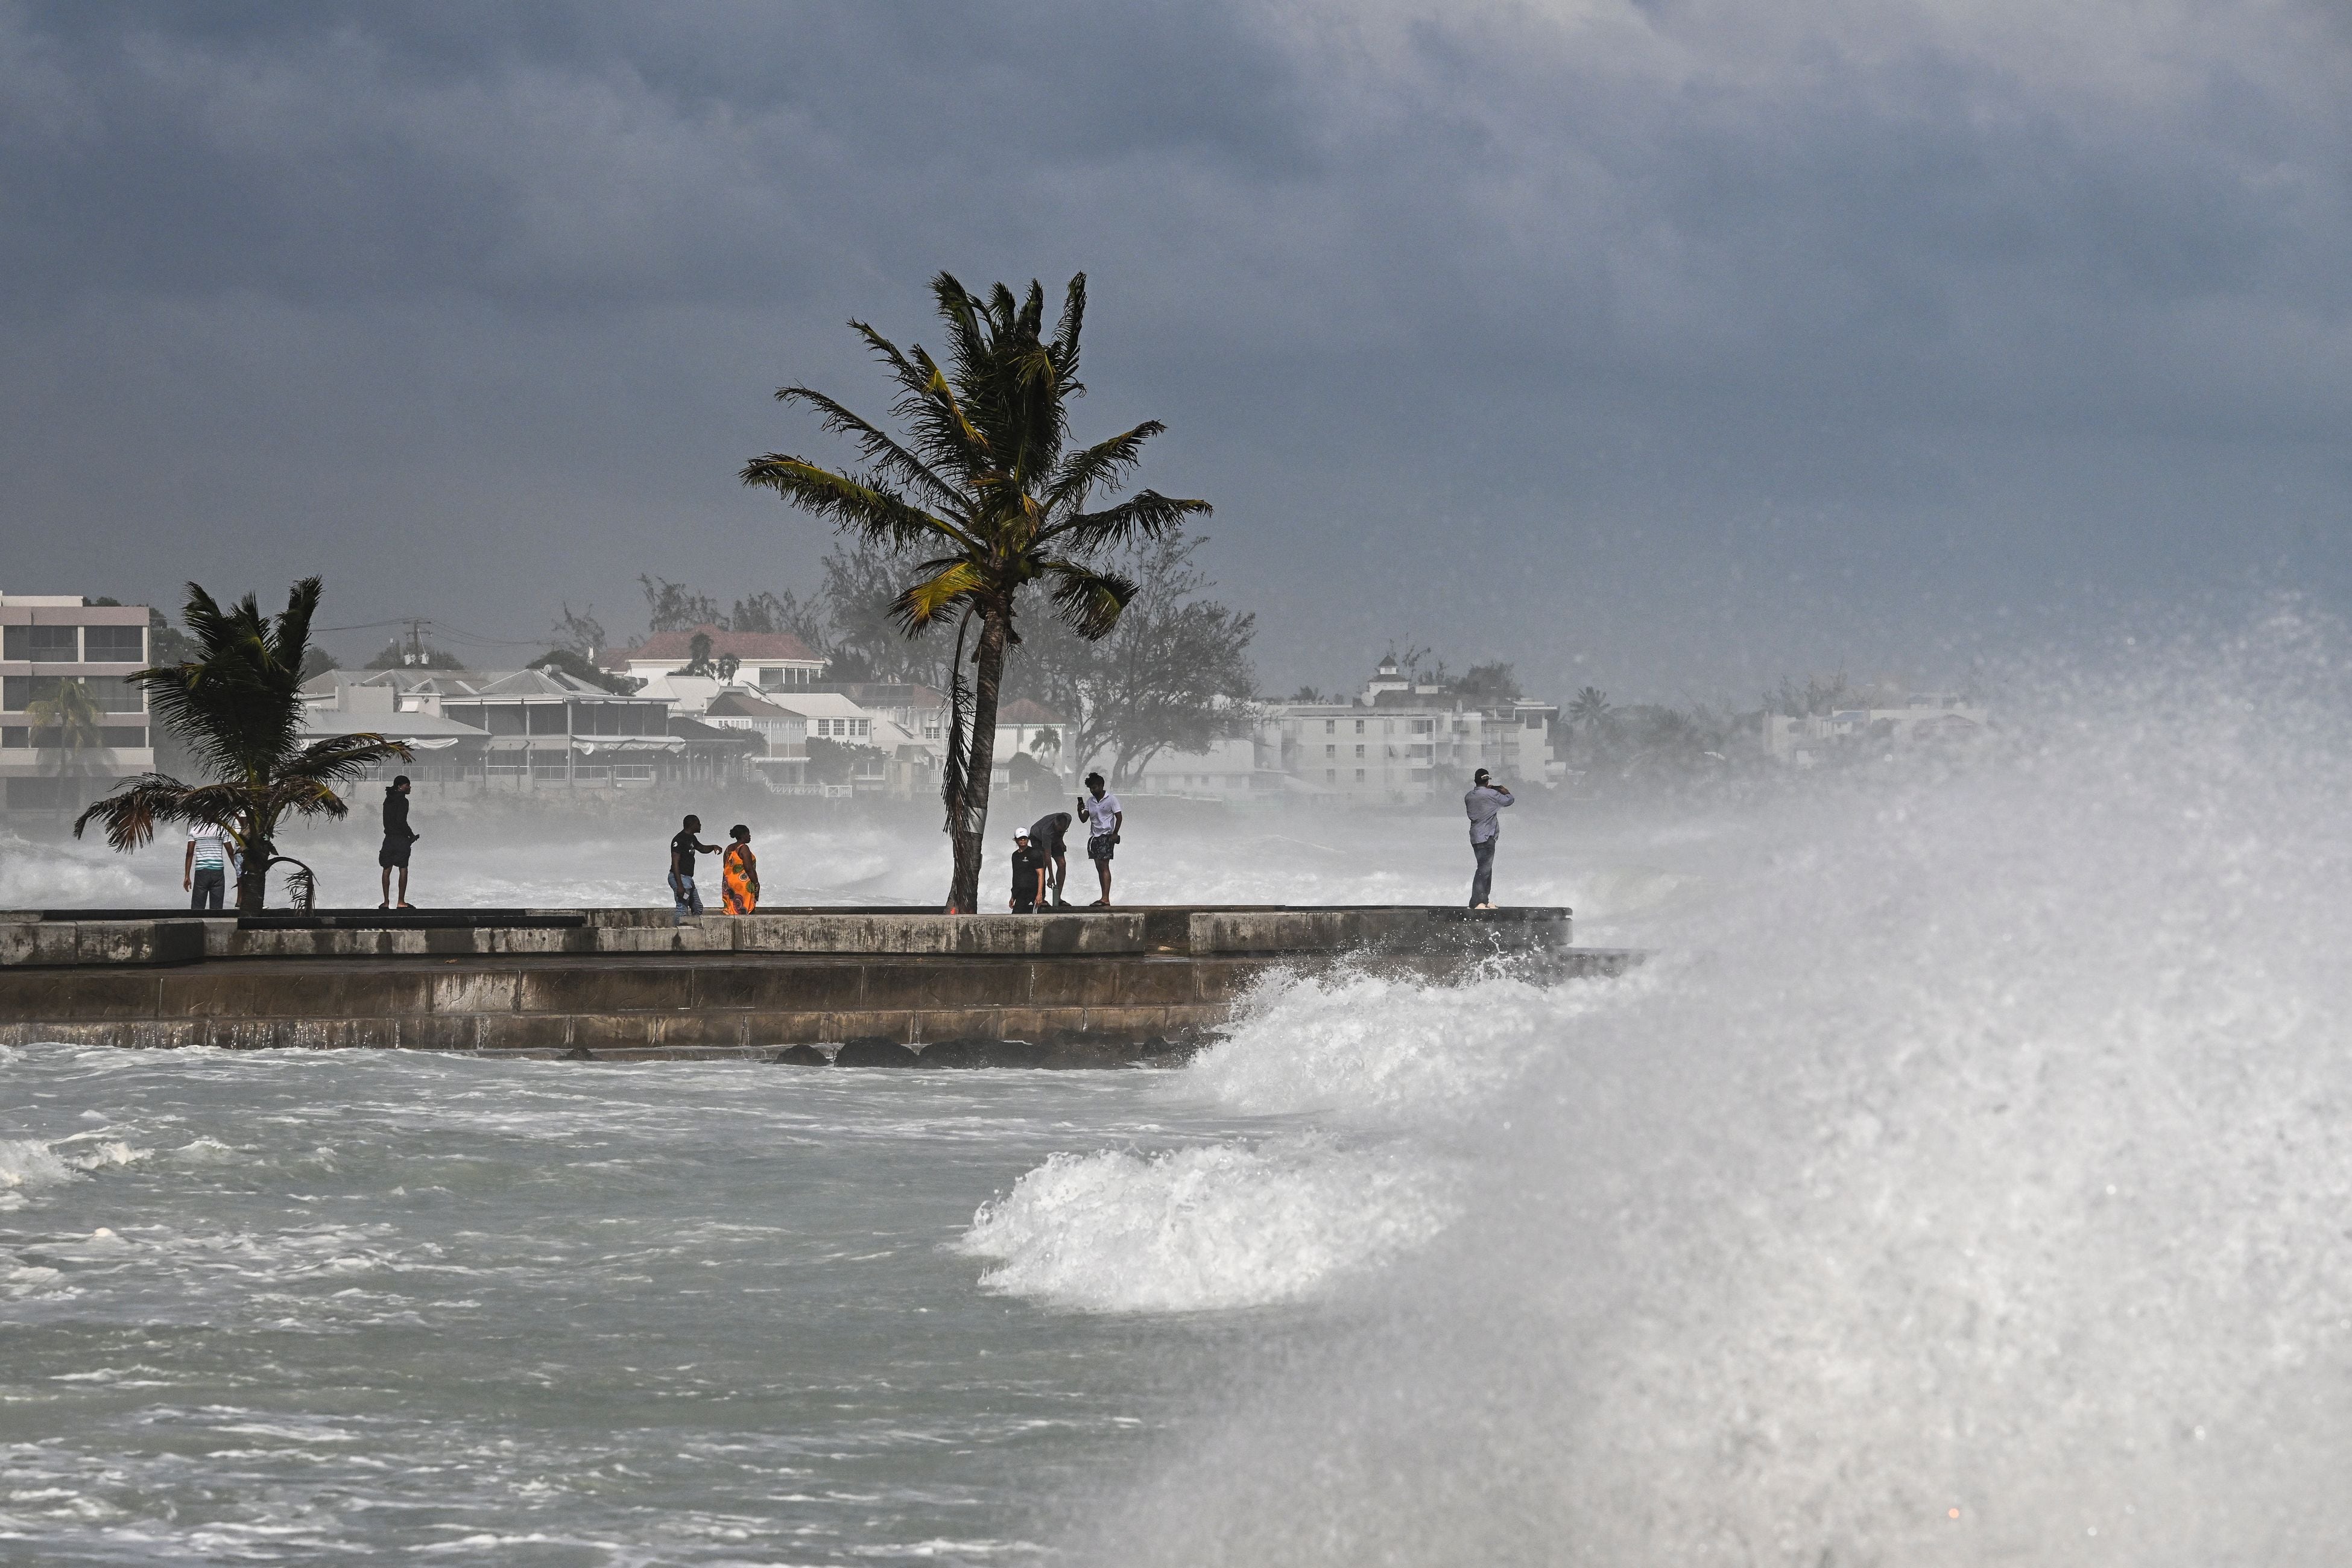 Personas visitan un muelle durante la marea alta después del paso del huracán Beryl en Oistins, cerca de Bridgetown, Barbados, el 1 de julio de 2024. El huracán Beryl causó devastadores vientos y fuertes lluvias en varias islas del Caribe el 1 de julio de 2024, marcando el evento más temprano registrado en la historia. La tormenta, clasificada como categoría 4, se movía hacia el oeste. (Foto de CHANDAN KHANNA / AFP)